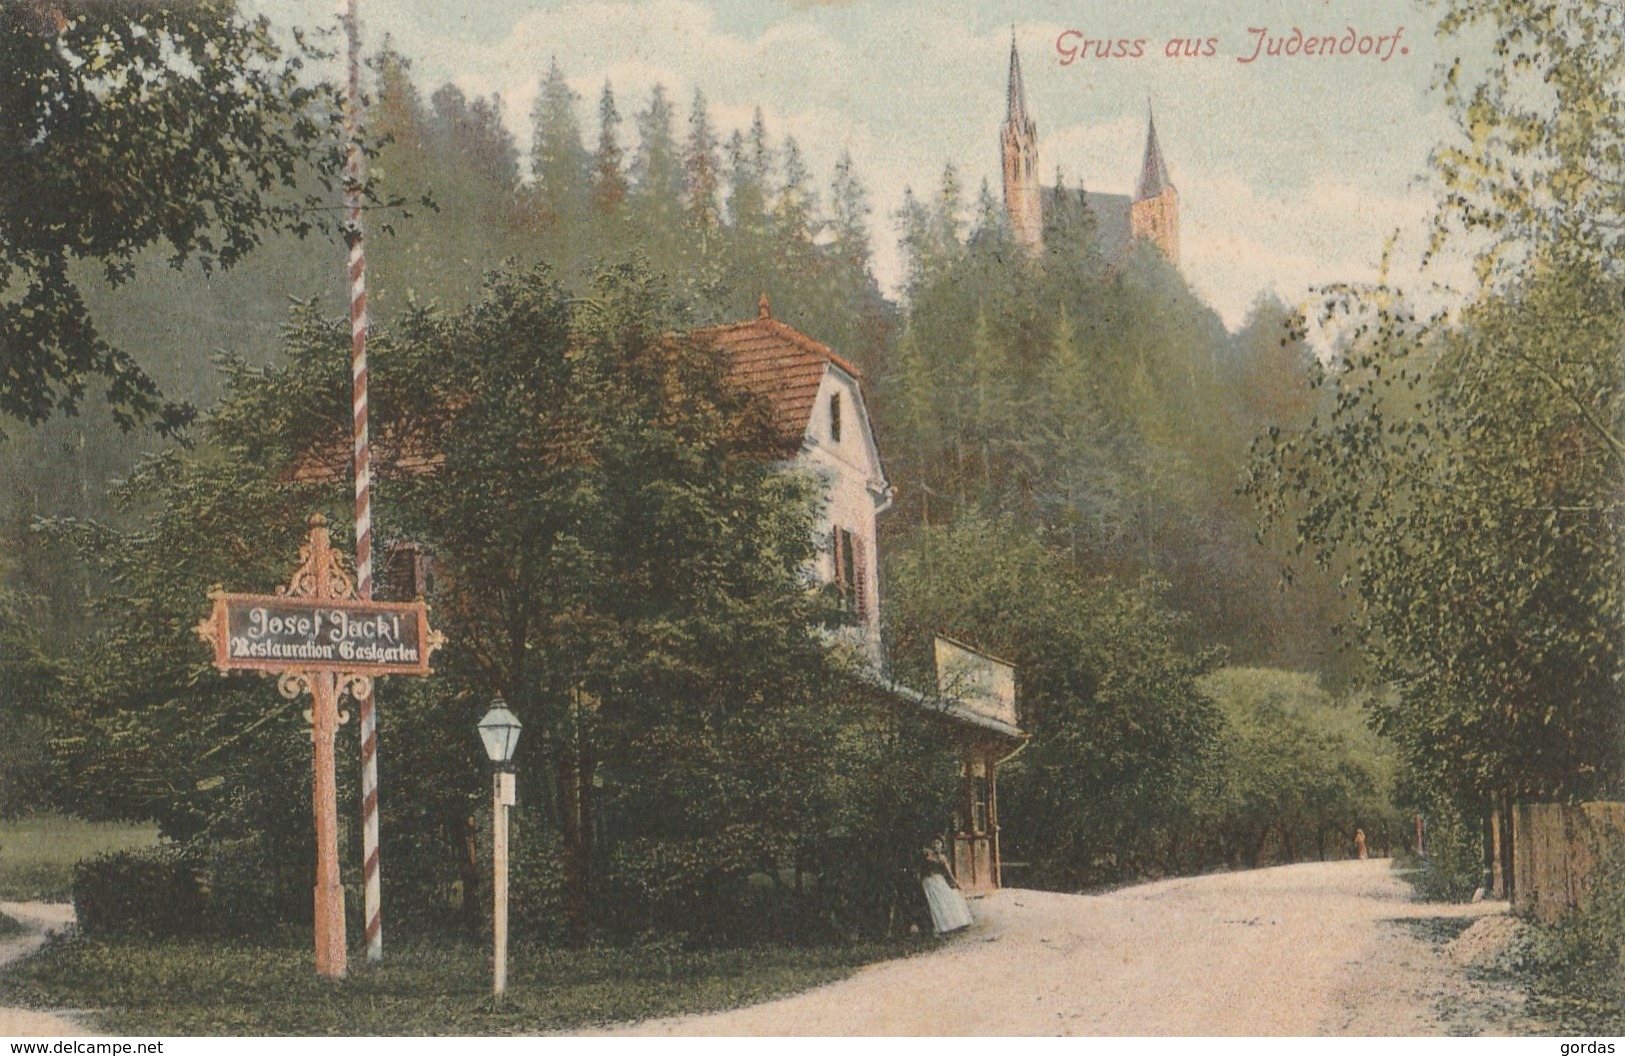 Austria - Gruss Aus Judendorf - Josef Jackl Restauration Gastgarten - Judendorf-Strassengel